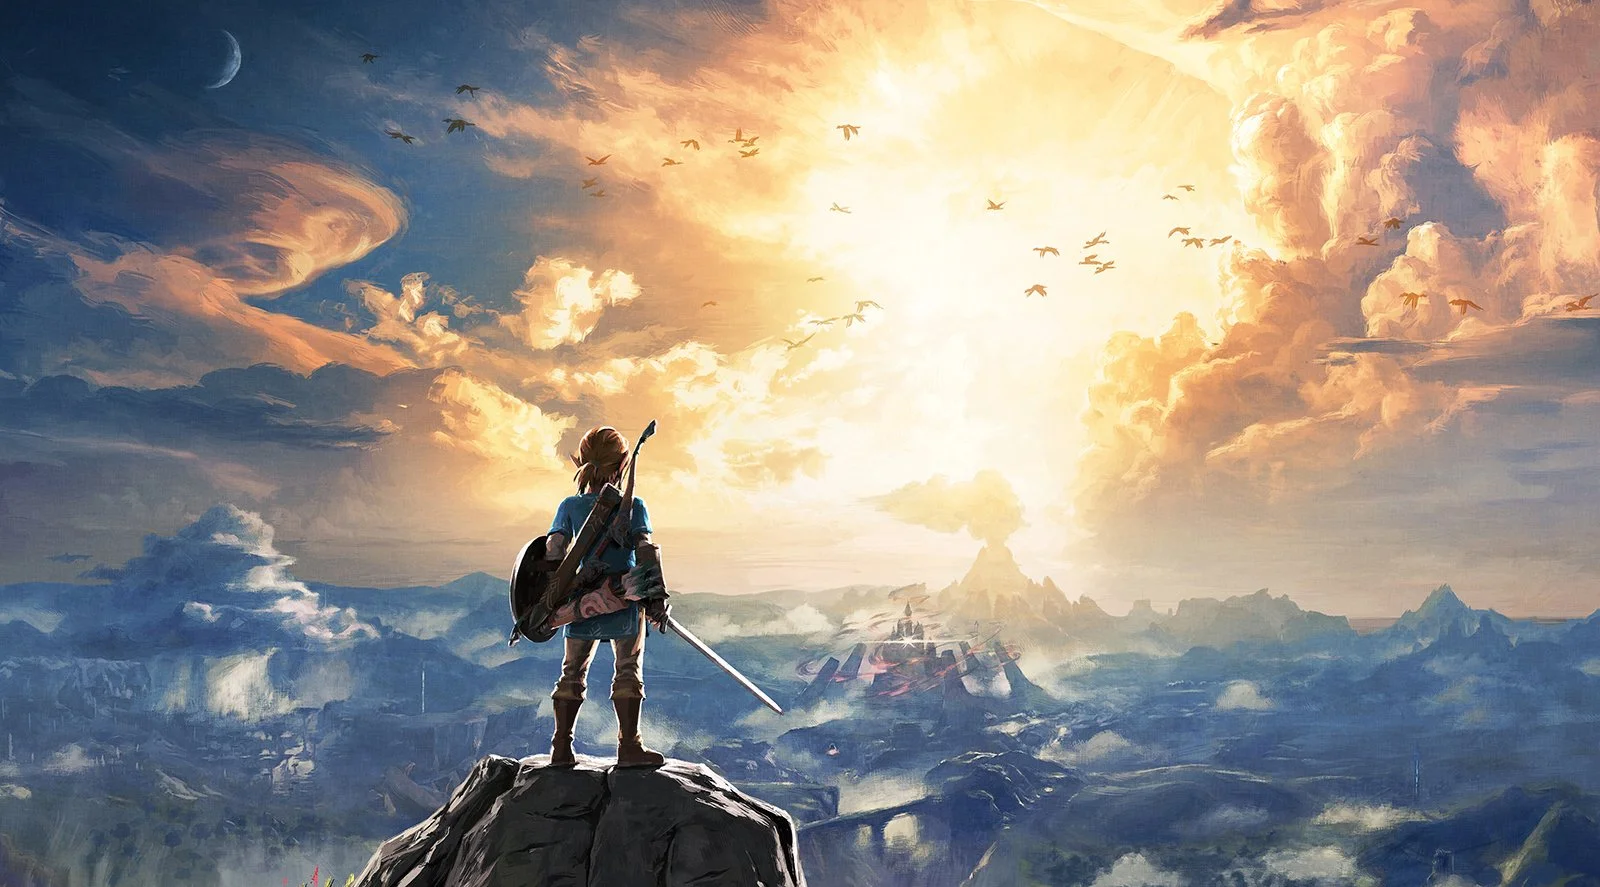 The Legend of Zelda: Breath of the Wild — самая крупная и амбициозная игра Nintendo за всю историю компании. Она заняла второе место в топе лучших игр всех времен на Metacritic, вызвав дополнительный ажиотаж вокруг новой консоли Switch. Но это на Западе, где очень многие игроки и журналисты выросли на «Зельде» и привыкли буквально молиться на каждый новый выпуск серии. А что на счет нас? Сможет ли новая «Зельда» столь же сильно тронуть тех, для кого серия культом не стала?